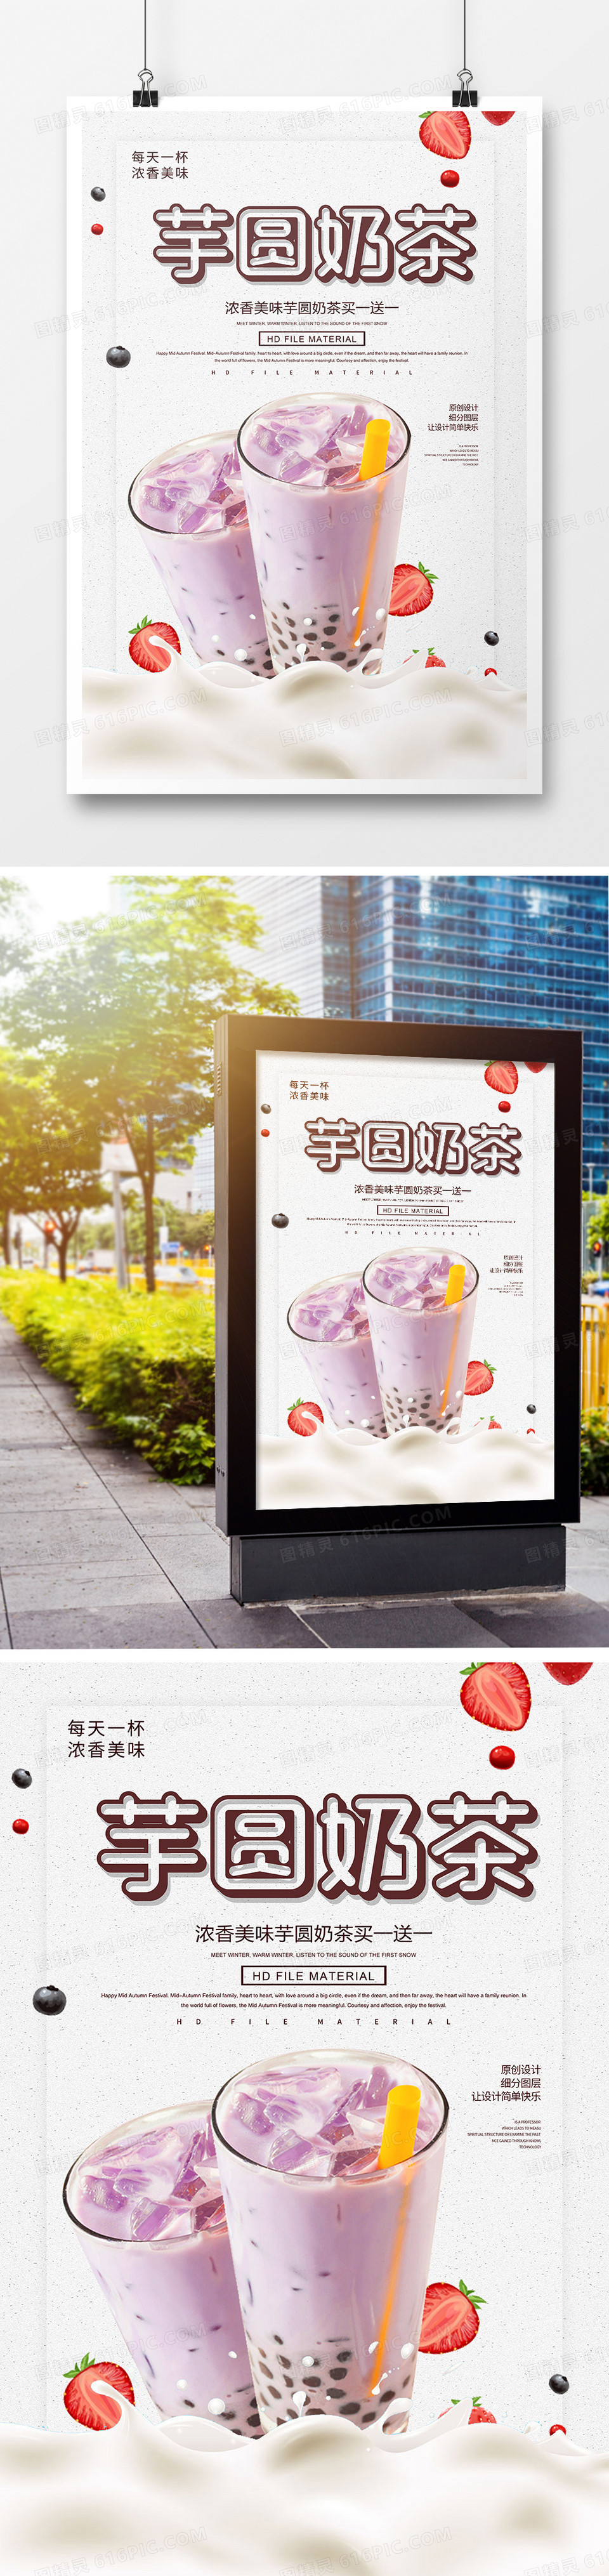 创意时尚芋圆奶茶宣传海报